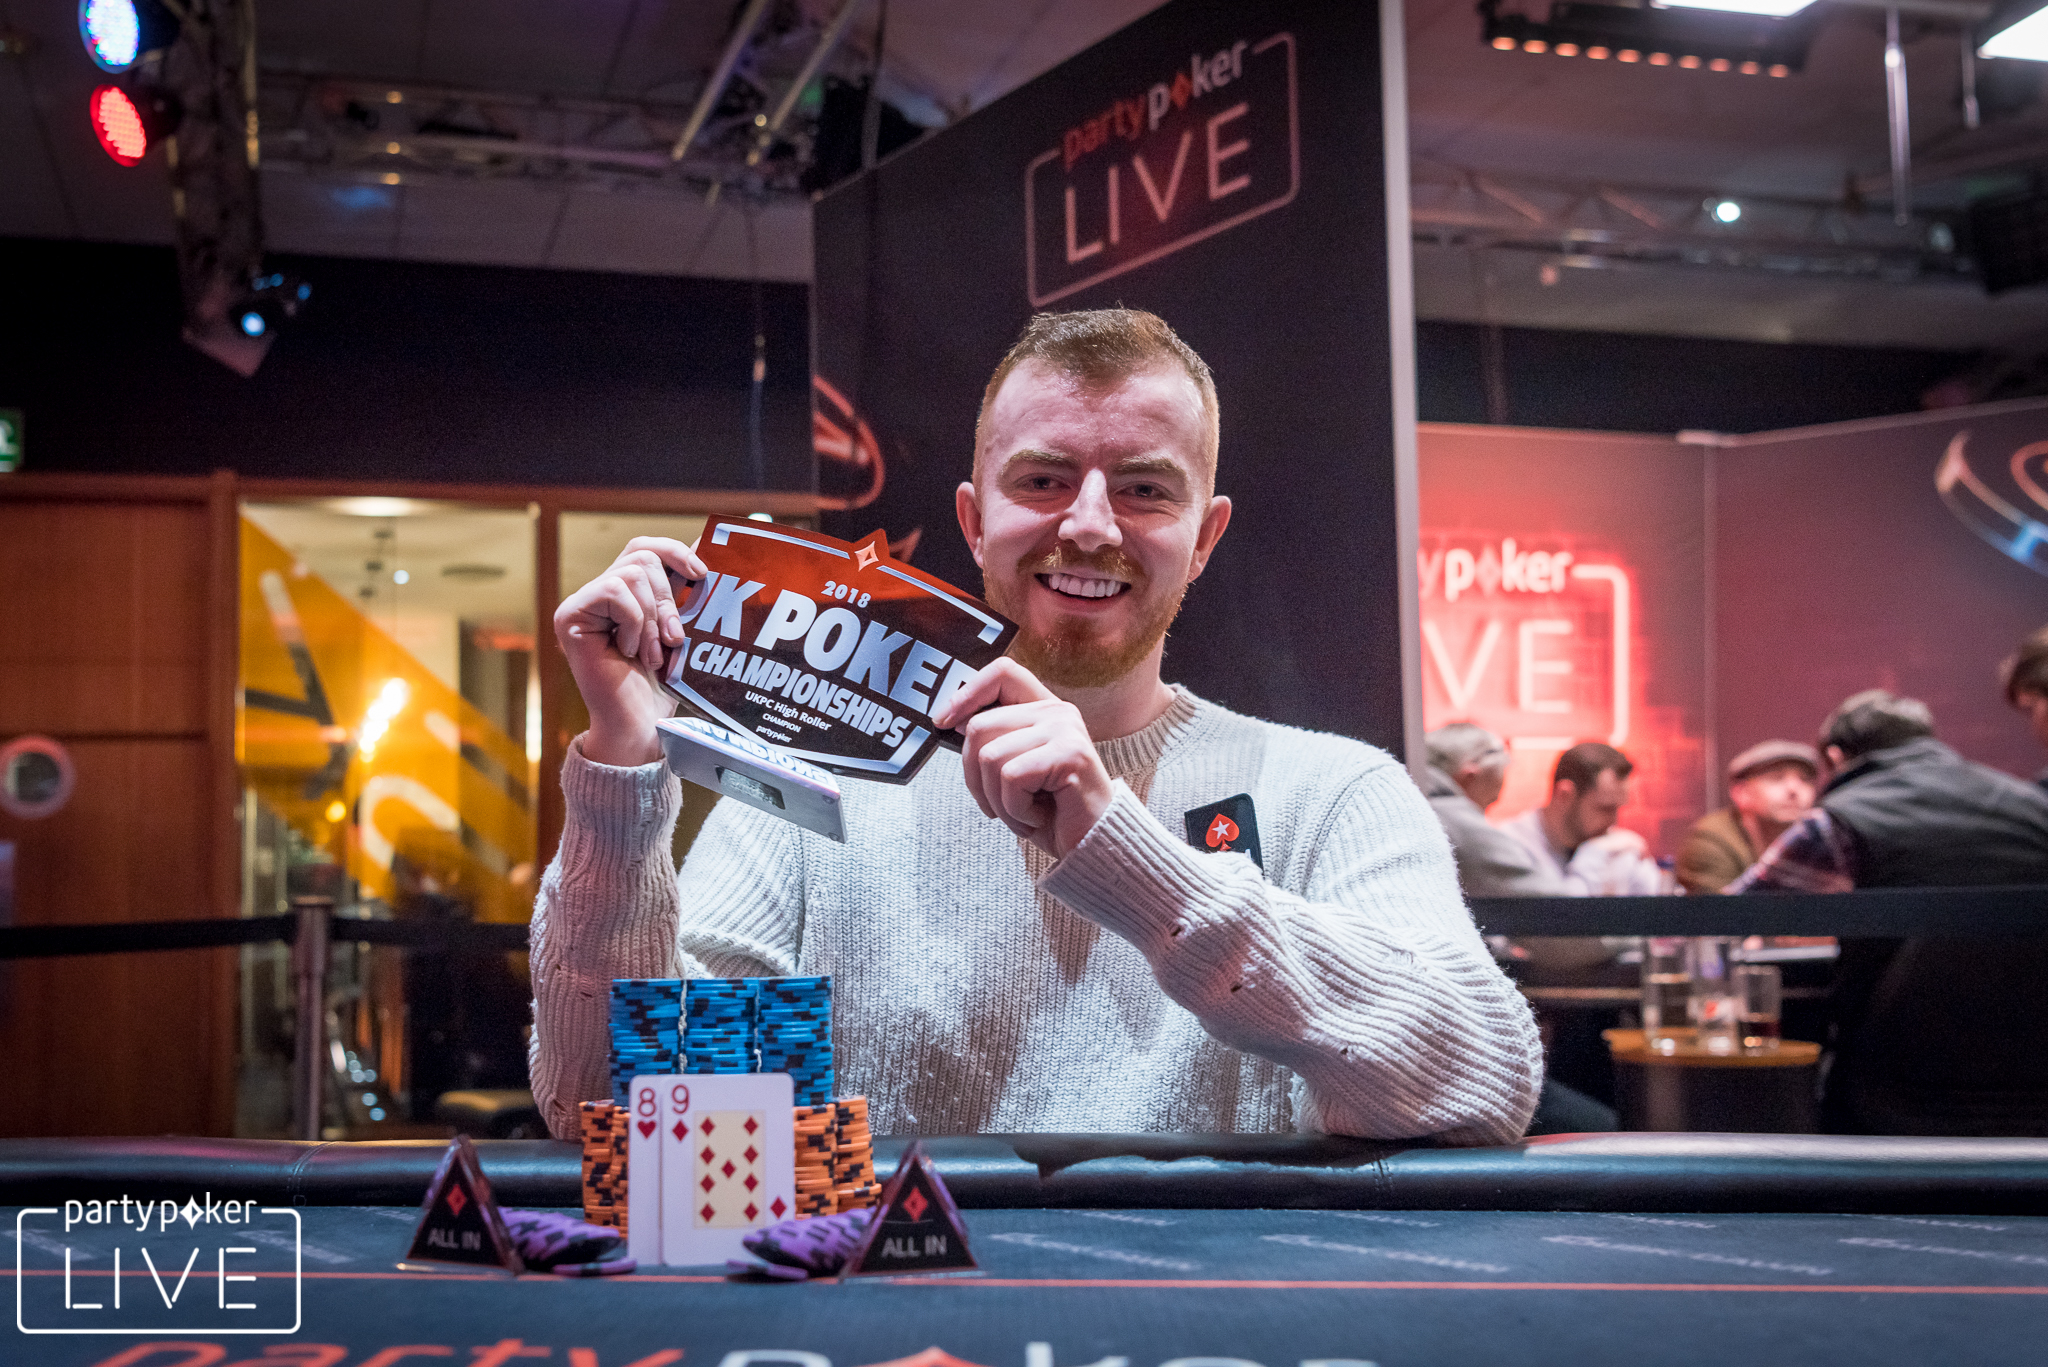 รับชมขณะที่ Jake Cody ชนะเงินรางวัล UKPC High Roller มูลค่า 60,000 ดอลลาร์ในชุดดำ!  |  โป๊กเกอร์นิวส์ casino